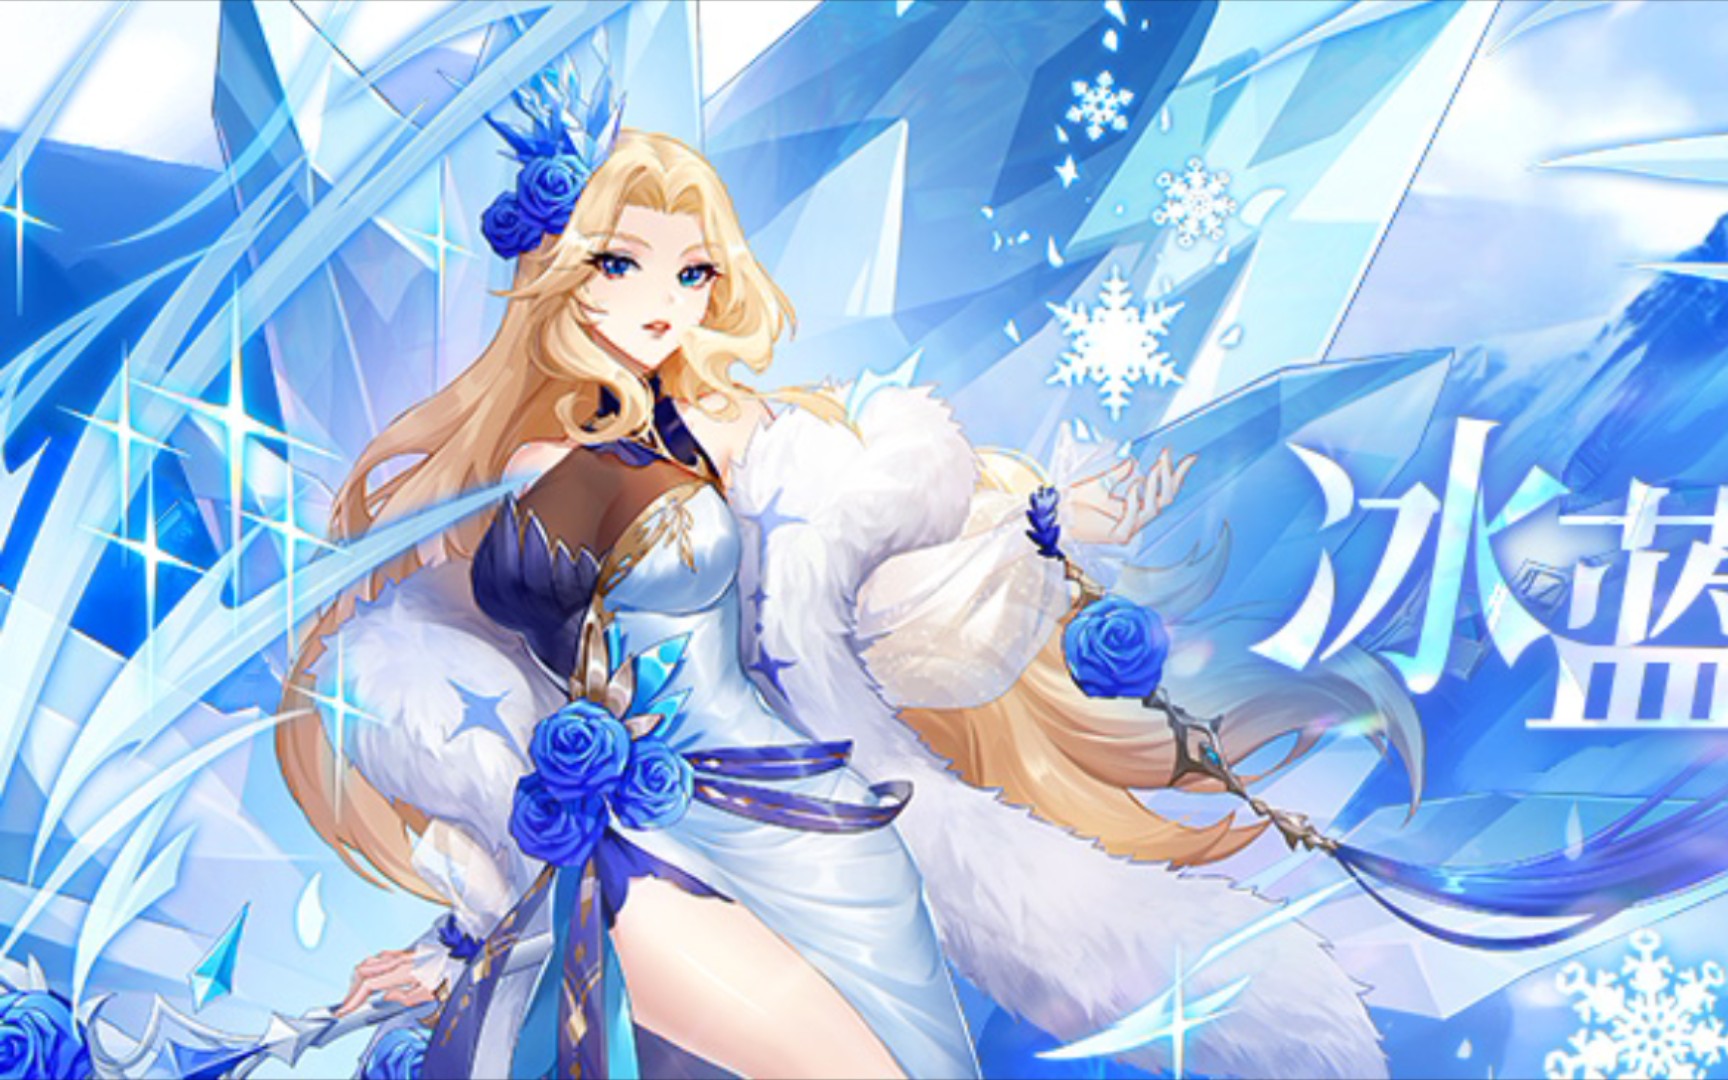 【闪烁之光】:冰雪女王的冰冻还是强啊!